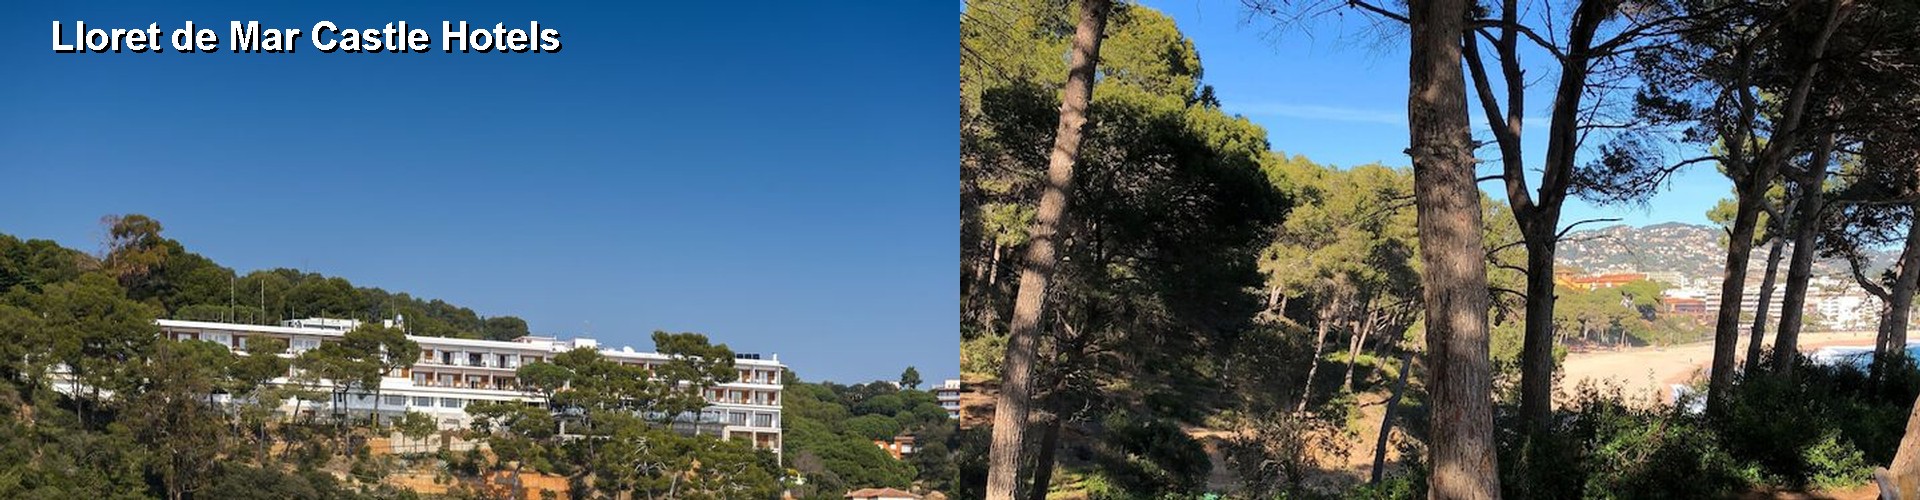 5 Best Hotels near Lloret de Mar Castle